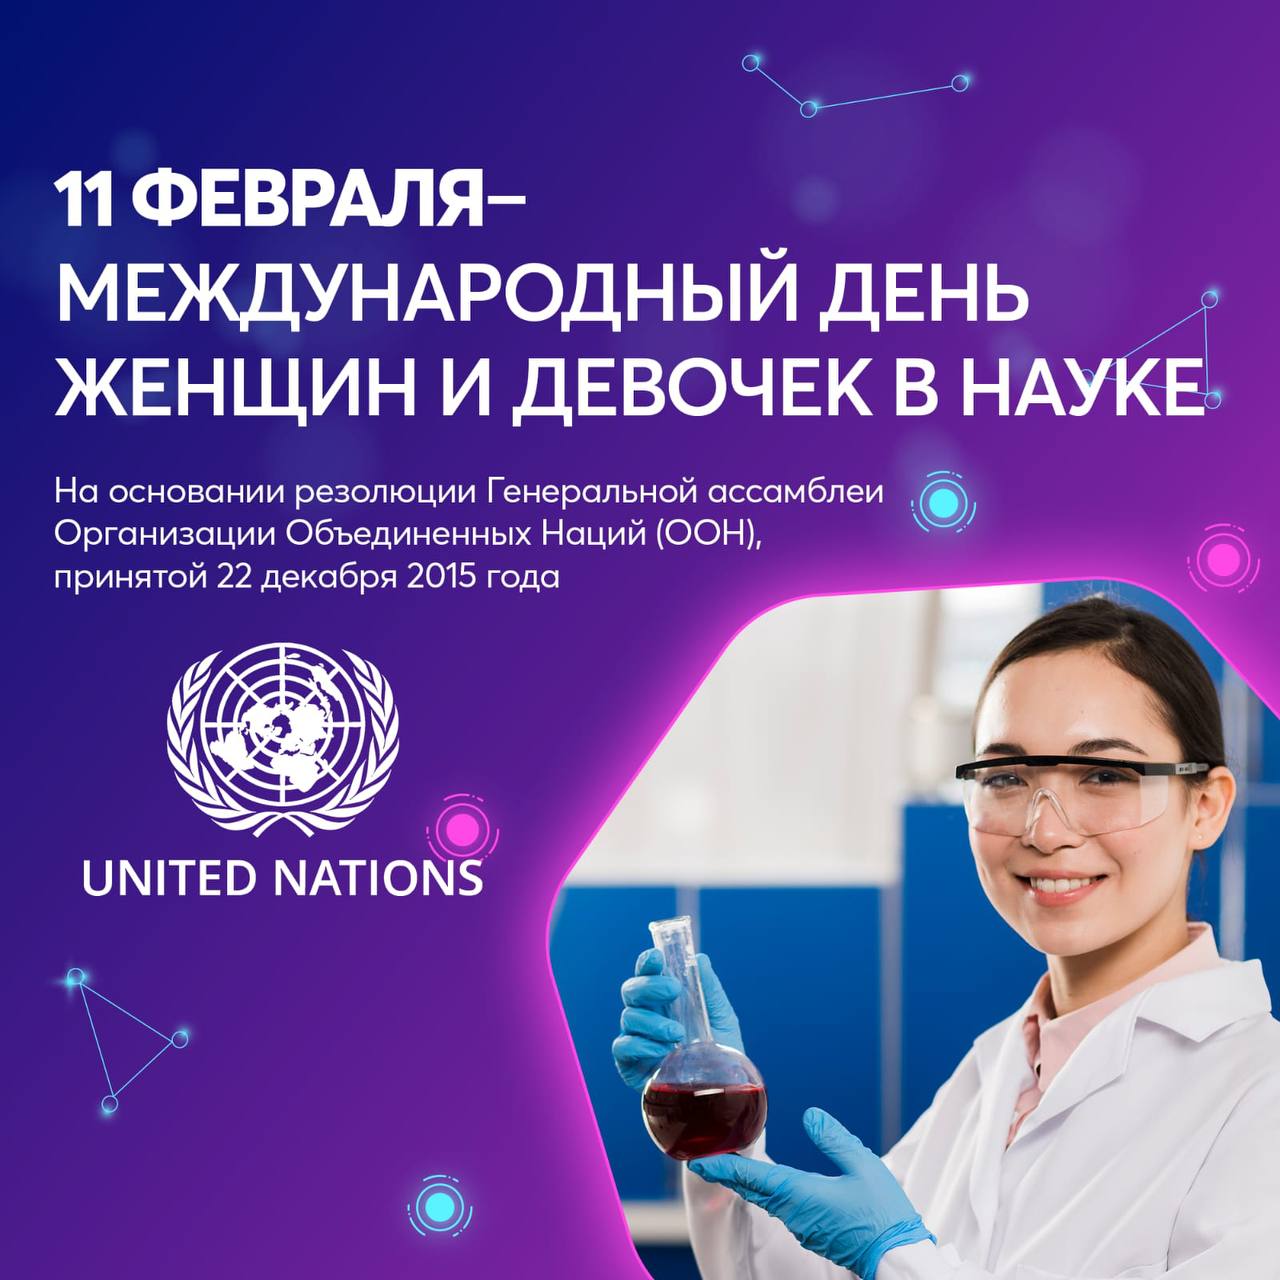 11 февраля – Международный день женщин и девочек в науке!